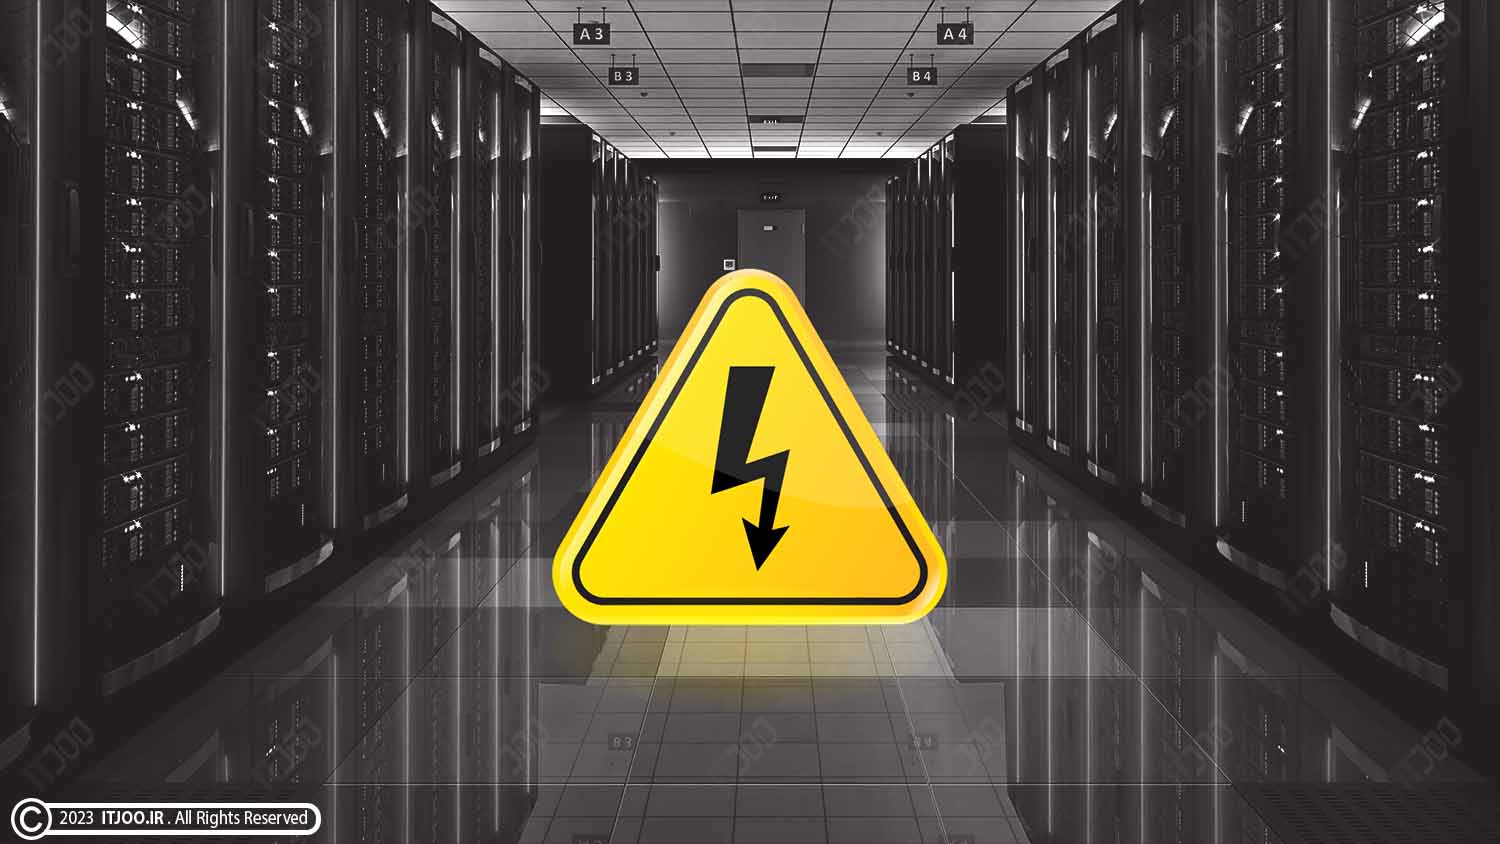 قطع برق دیتاسنتر (مرکز داده) - data center power outage